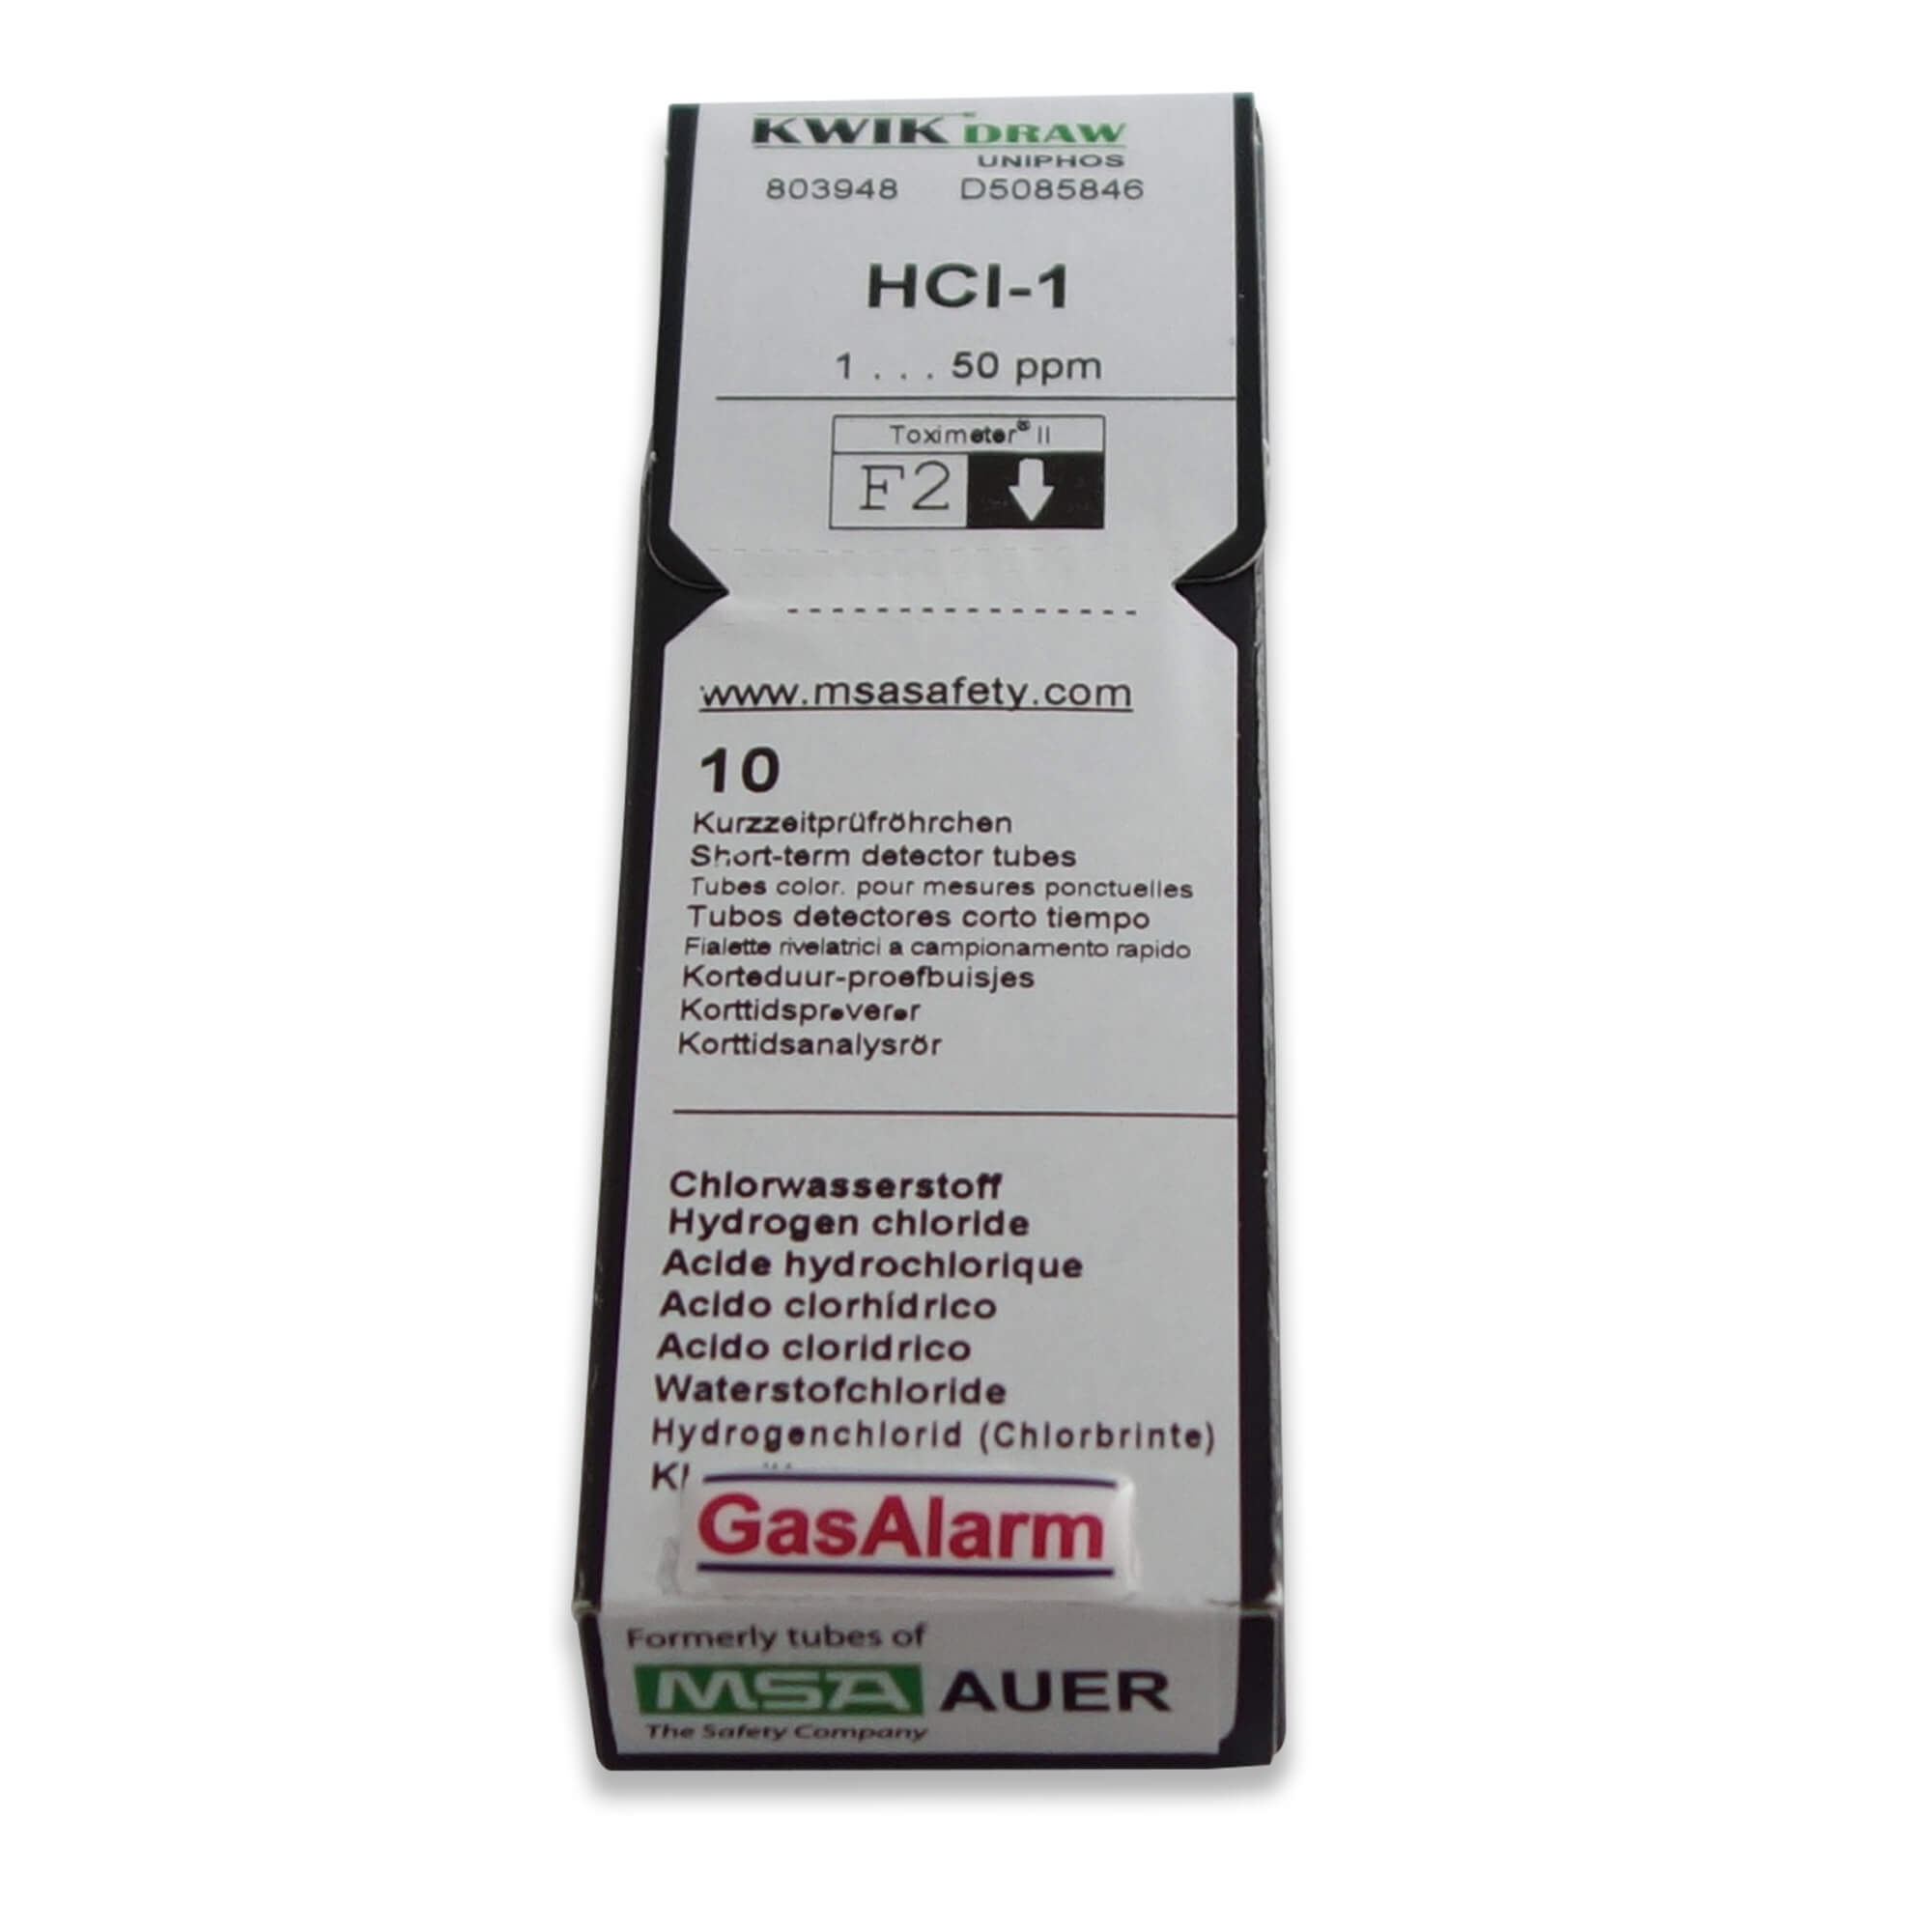 D5085847 - Carbon Monoxide Detection Tubes